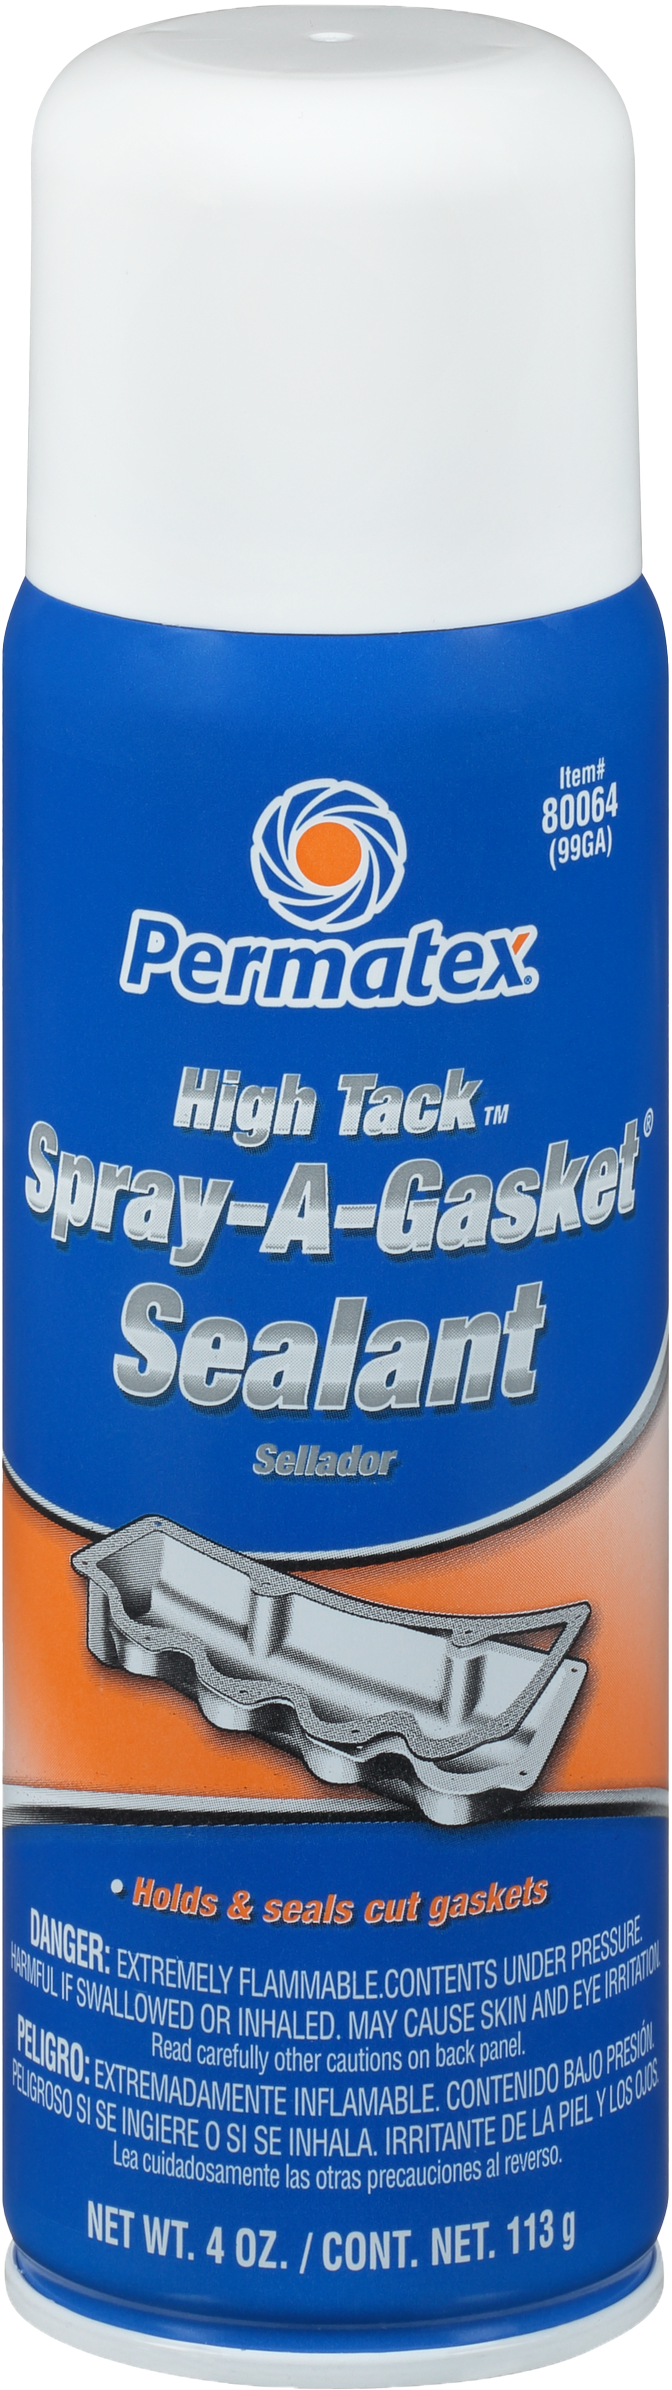 Permatex - High Tack Gasket Sealant 4.75oz - 80064